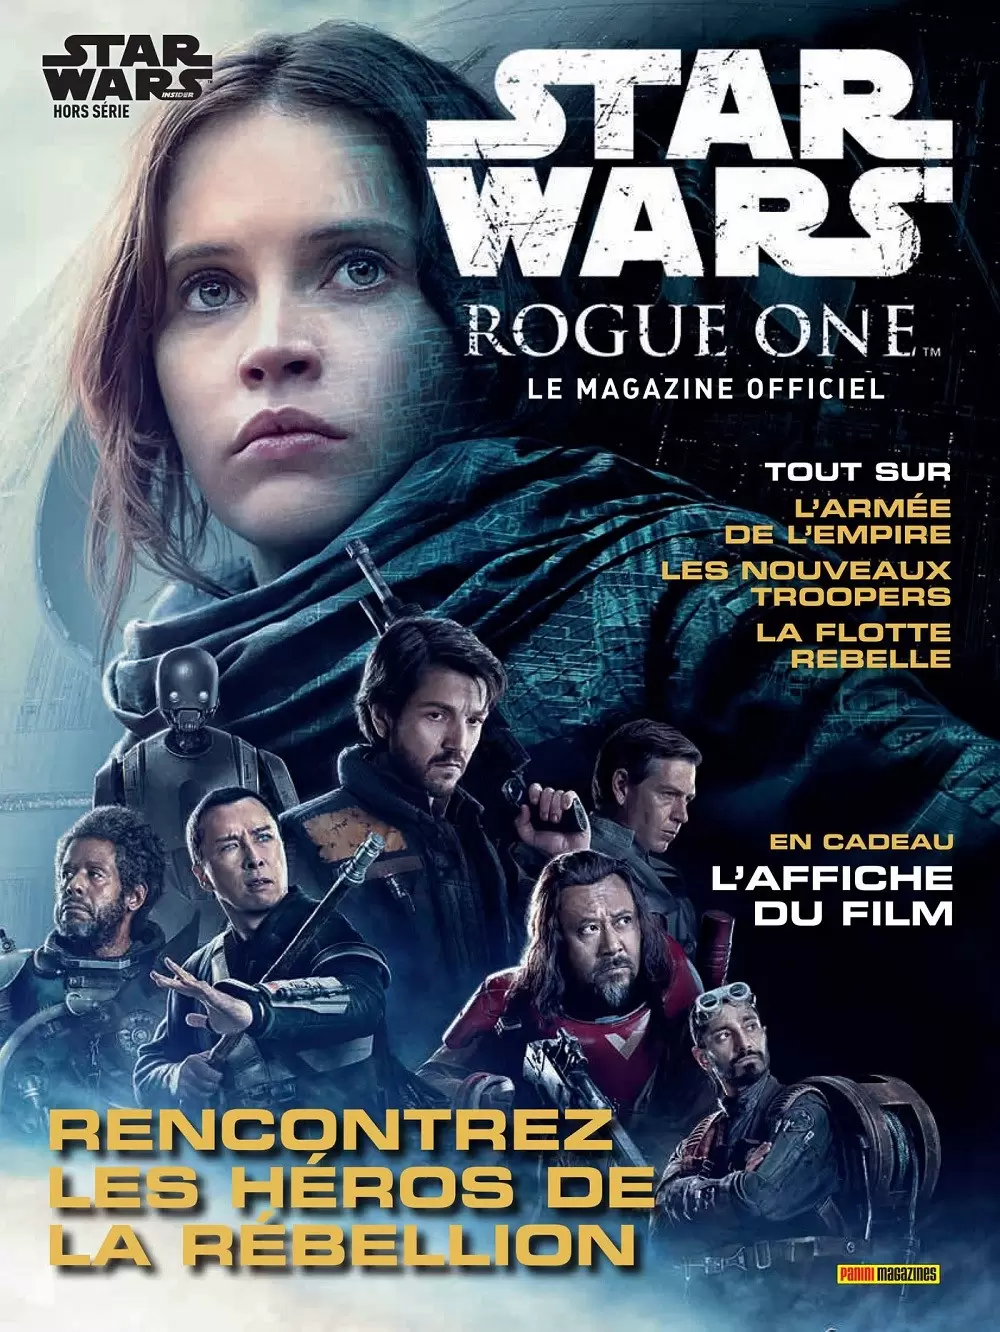 Star Wars Insider - Star Wars Rogue One - Rencontrez les héros de la Rébellion